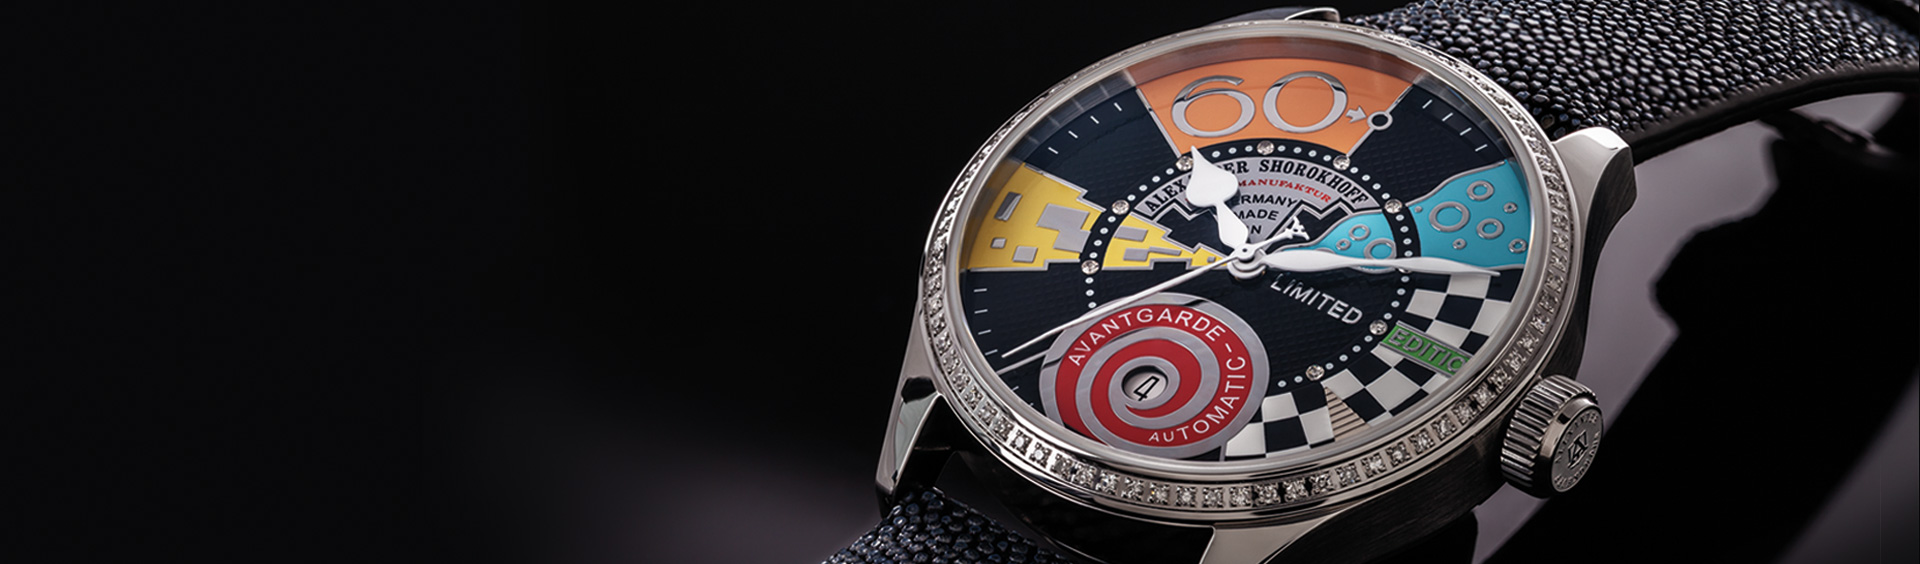 kunstvolle uhren deutsche luxus uhr awarded watches